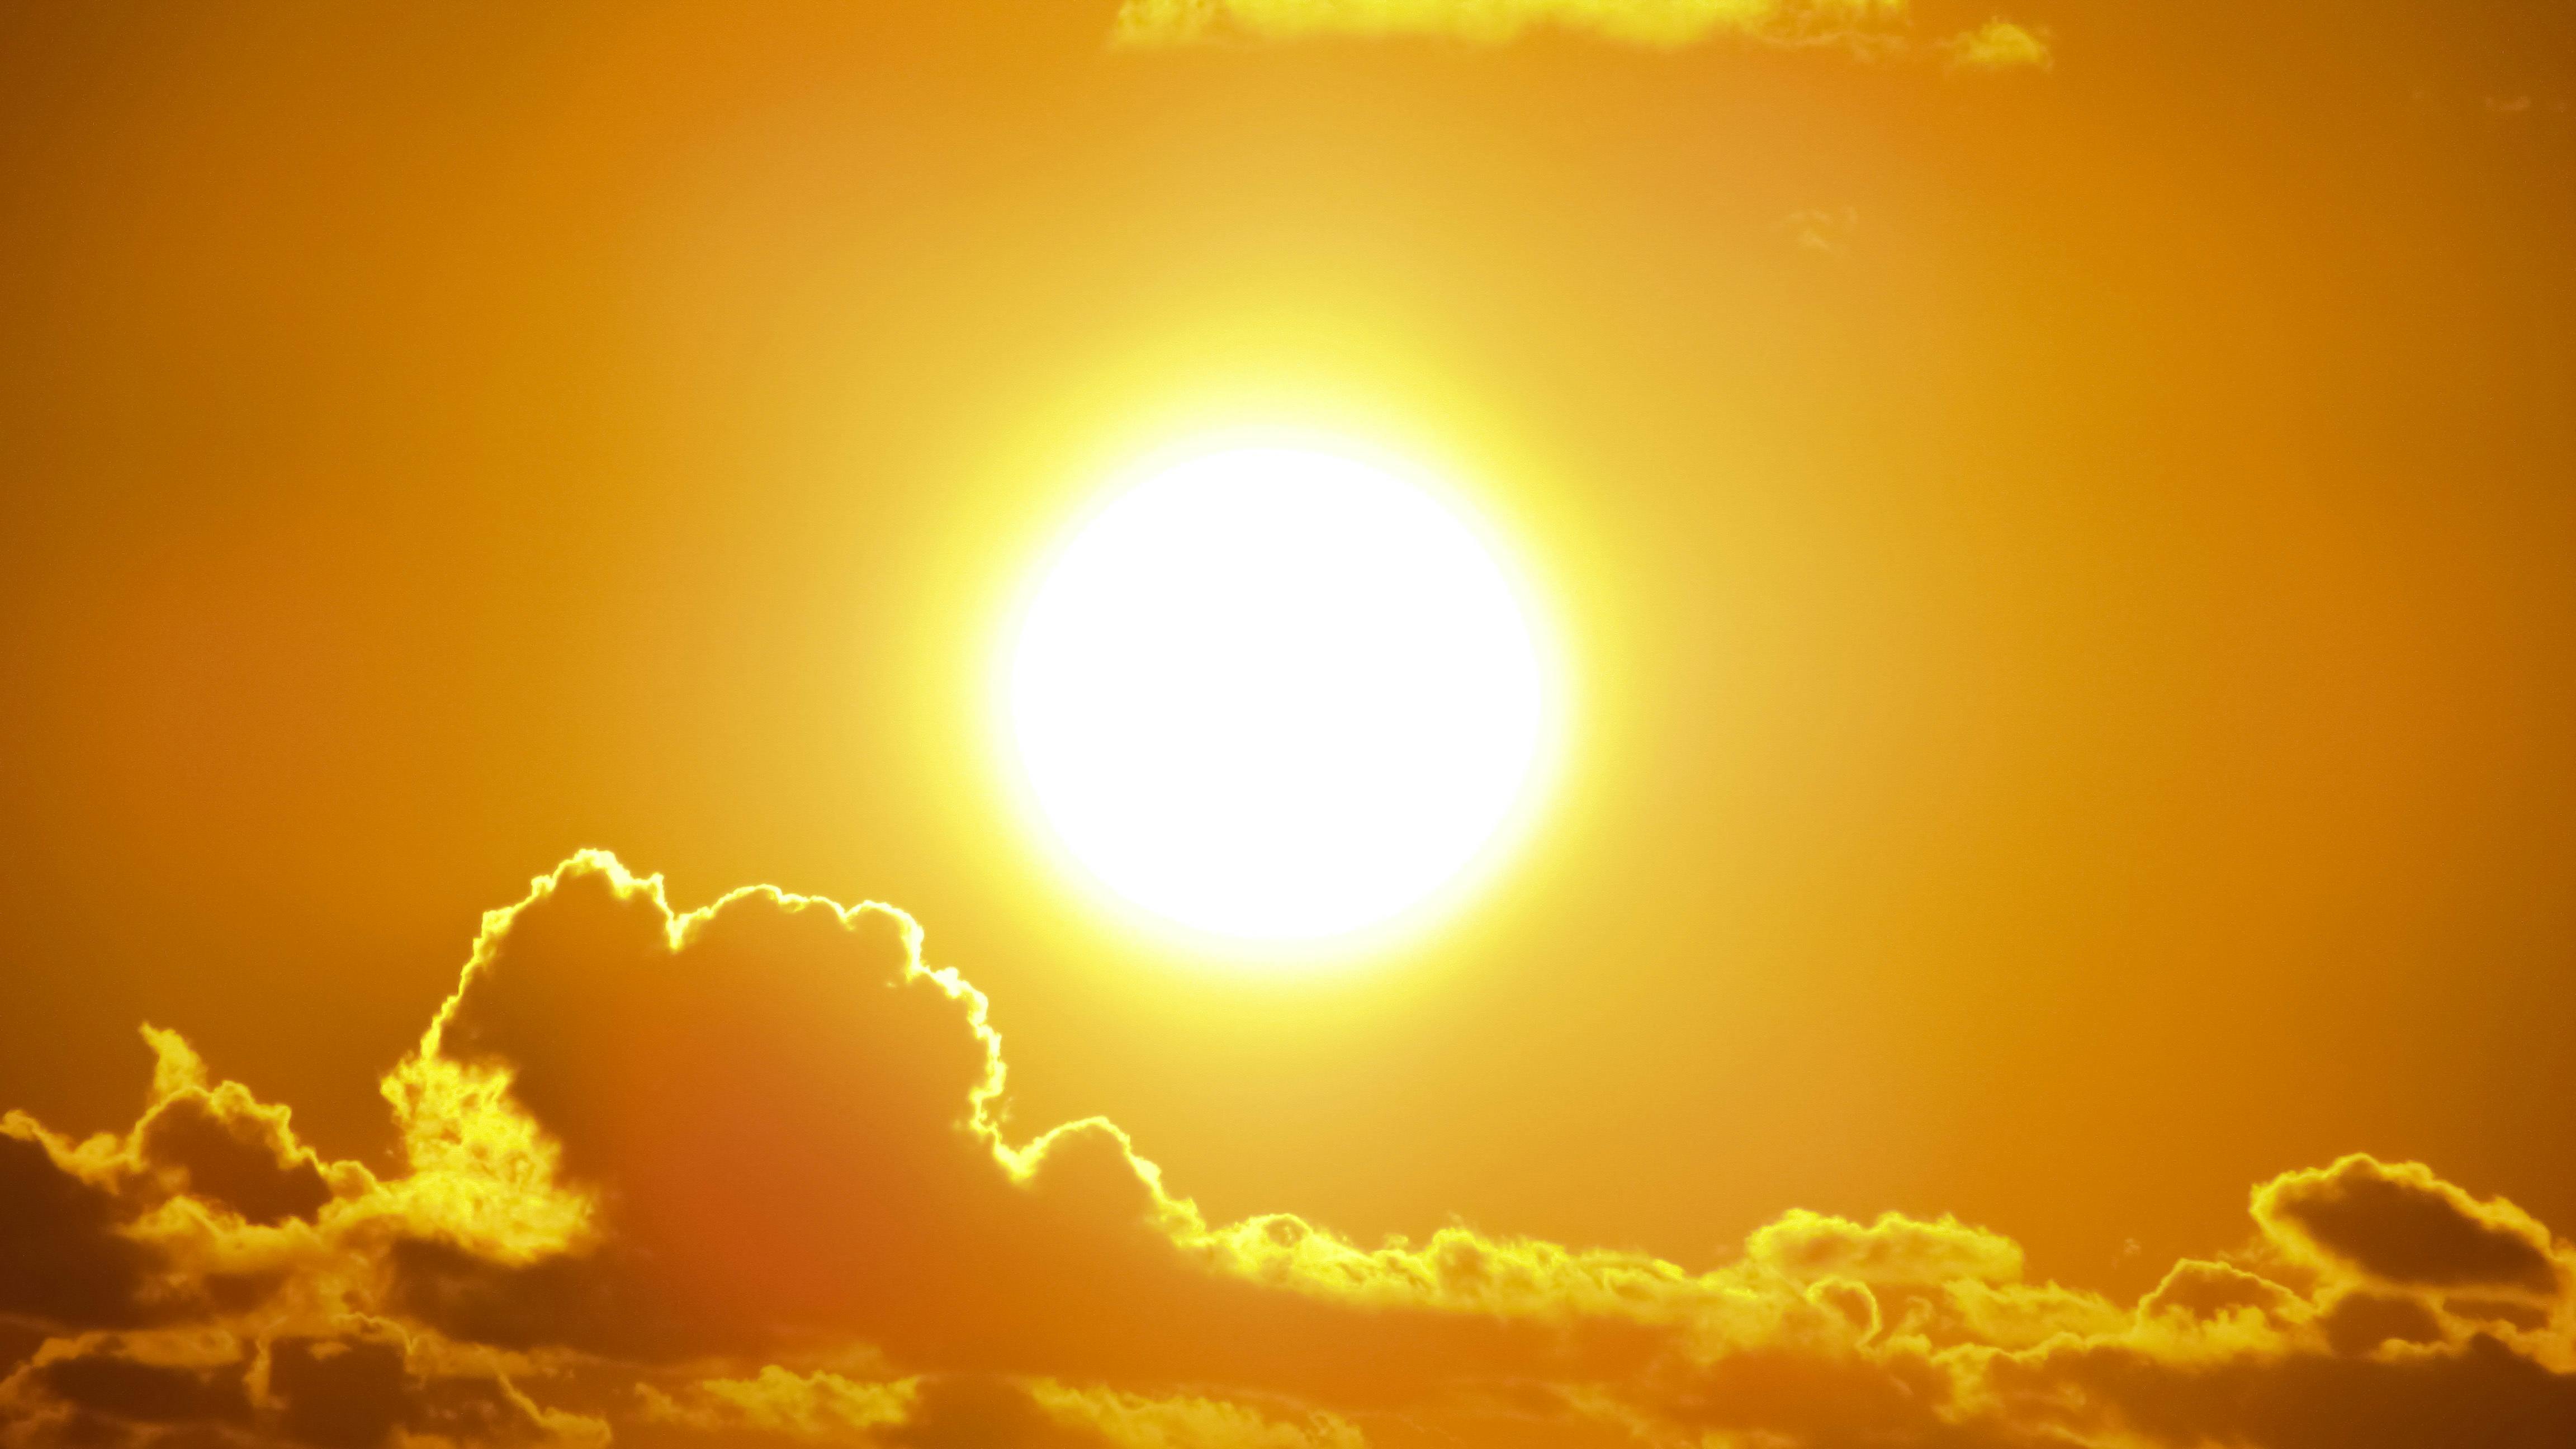 Hình nền Nền ánh Sáng Màu Xanh Khói ánh Sáng áp Phích Background Vector  để tải xuống miễn phí  Pngtree